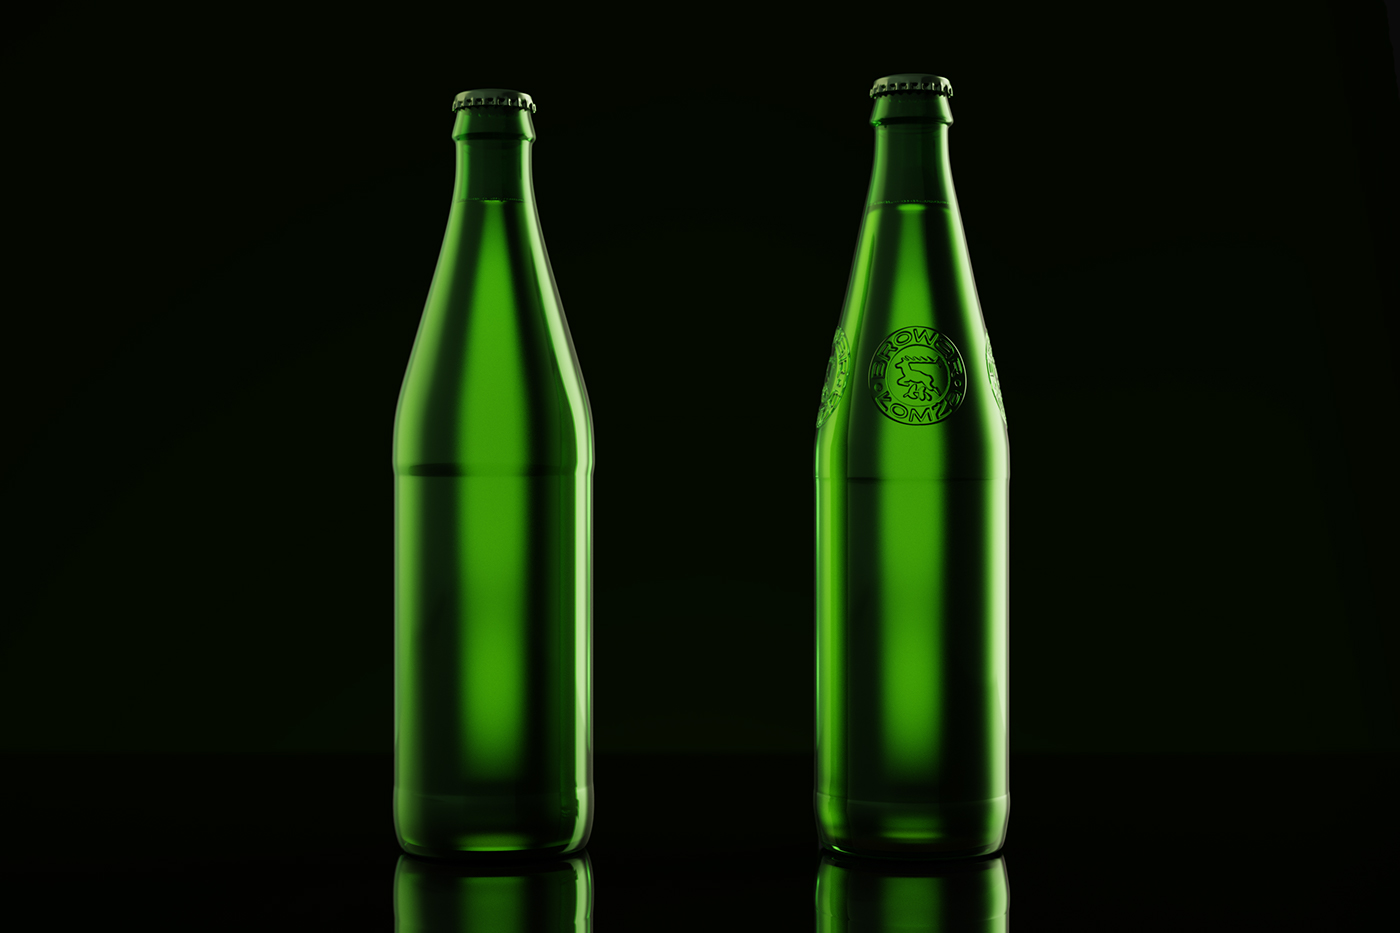 Packaging design product bottle rebranding beer brewery